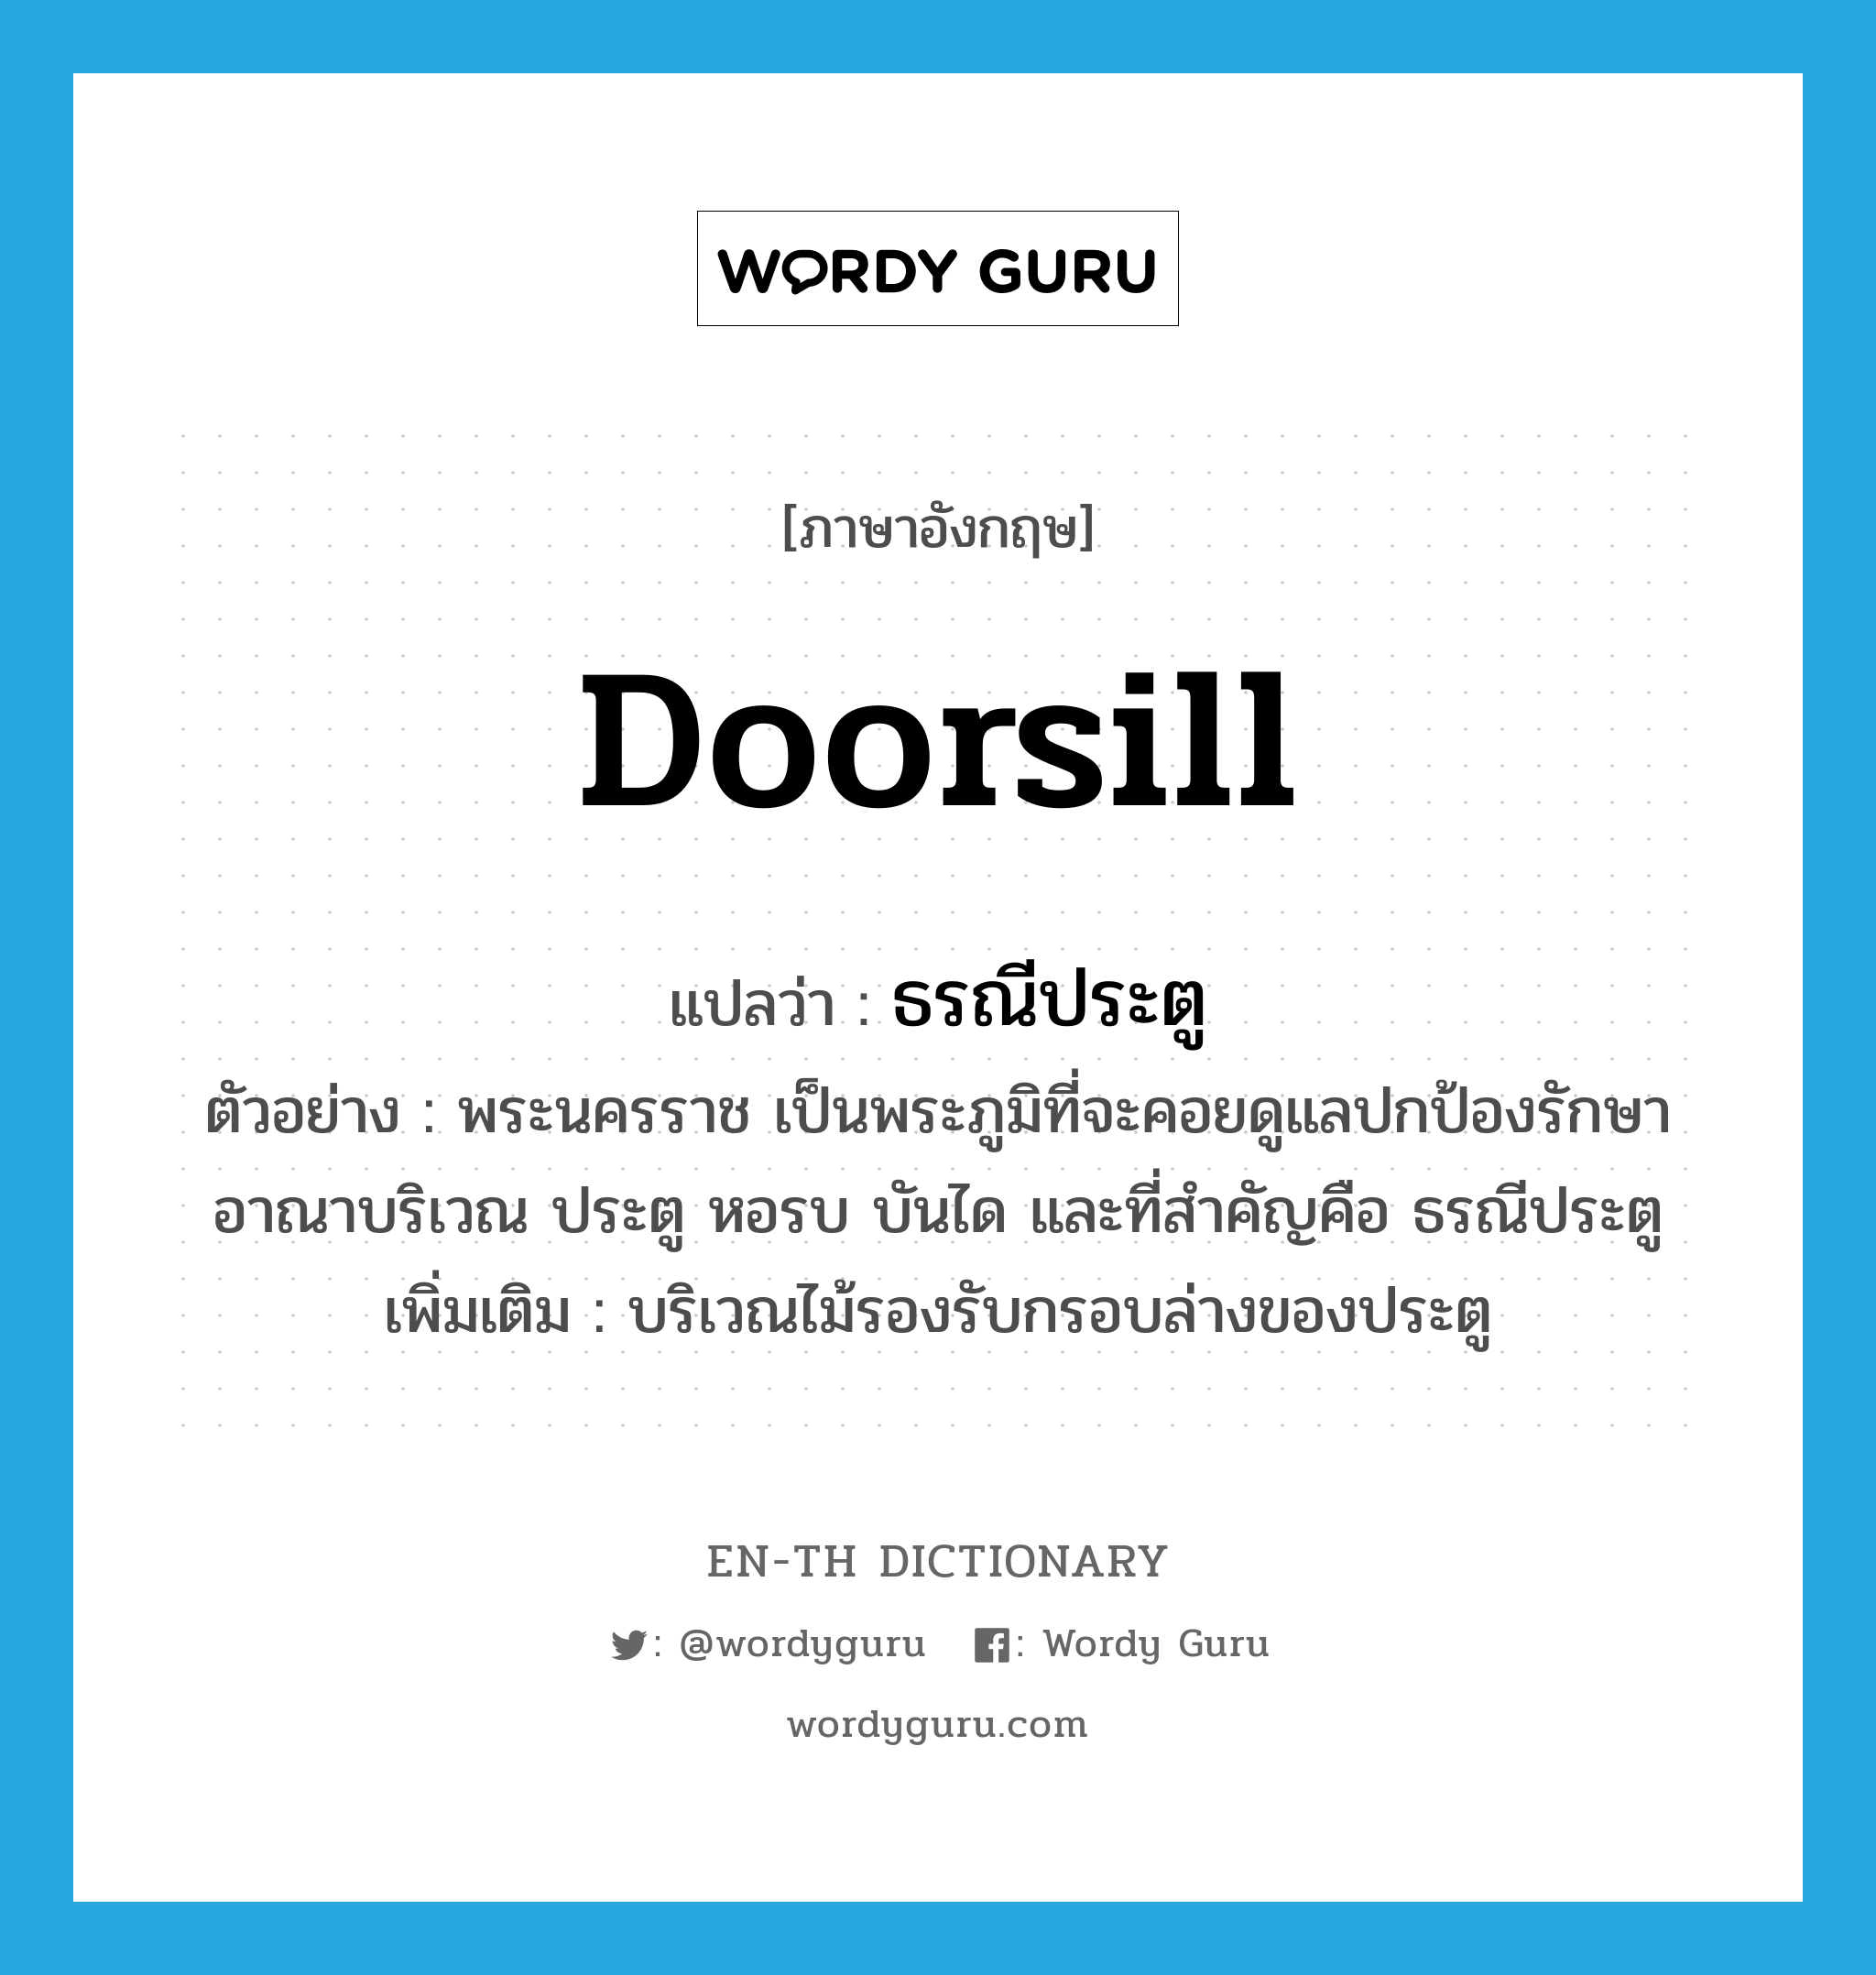 doorsill แปลว่า?, คำศัพท์ภาษาอังกฤษ doorsill แปลว่า ธรณีประตู ประเภท N ตัวอย่าง พระนครราช เป็นพระภูมิที่จะคอยดูแลปกป้องรักษาอาณาบริเวณ ประตู หอรบ บันได และที่สำคัญคือ ธรณีประตู เพิ่มเติม บริเวณไม้รองรับกรอบล่างของประตู หมวด N